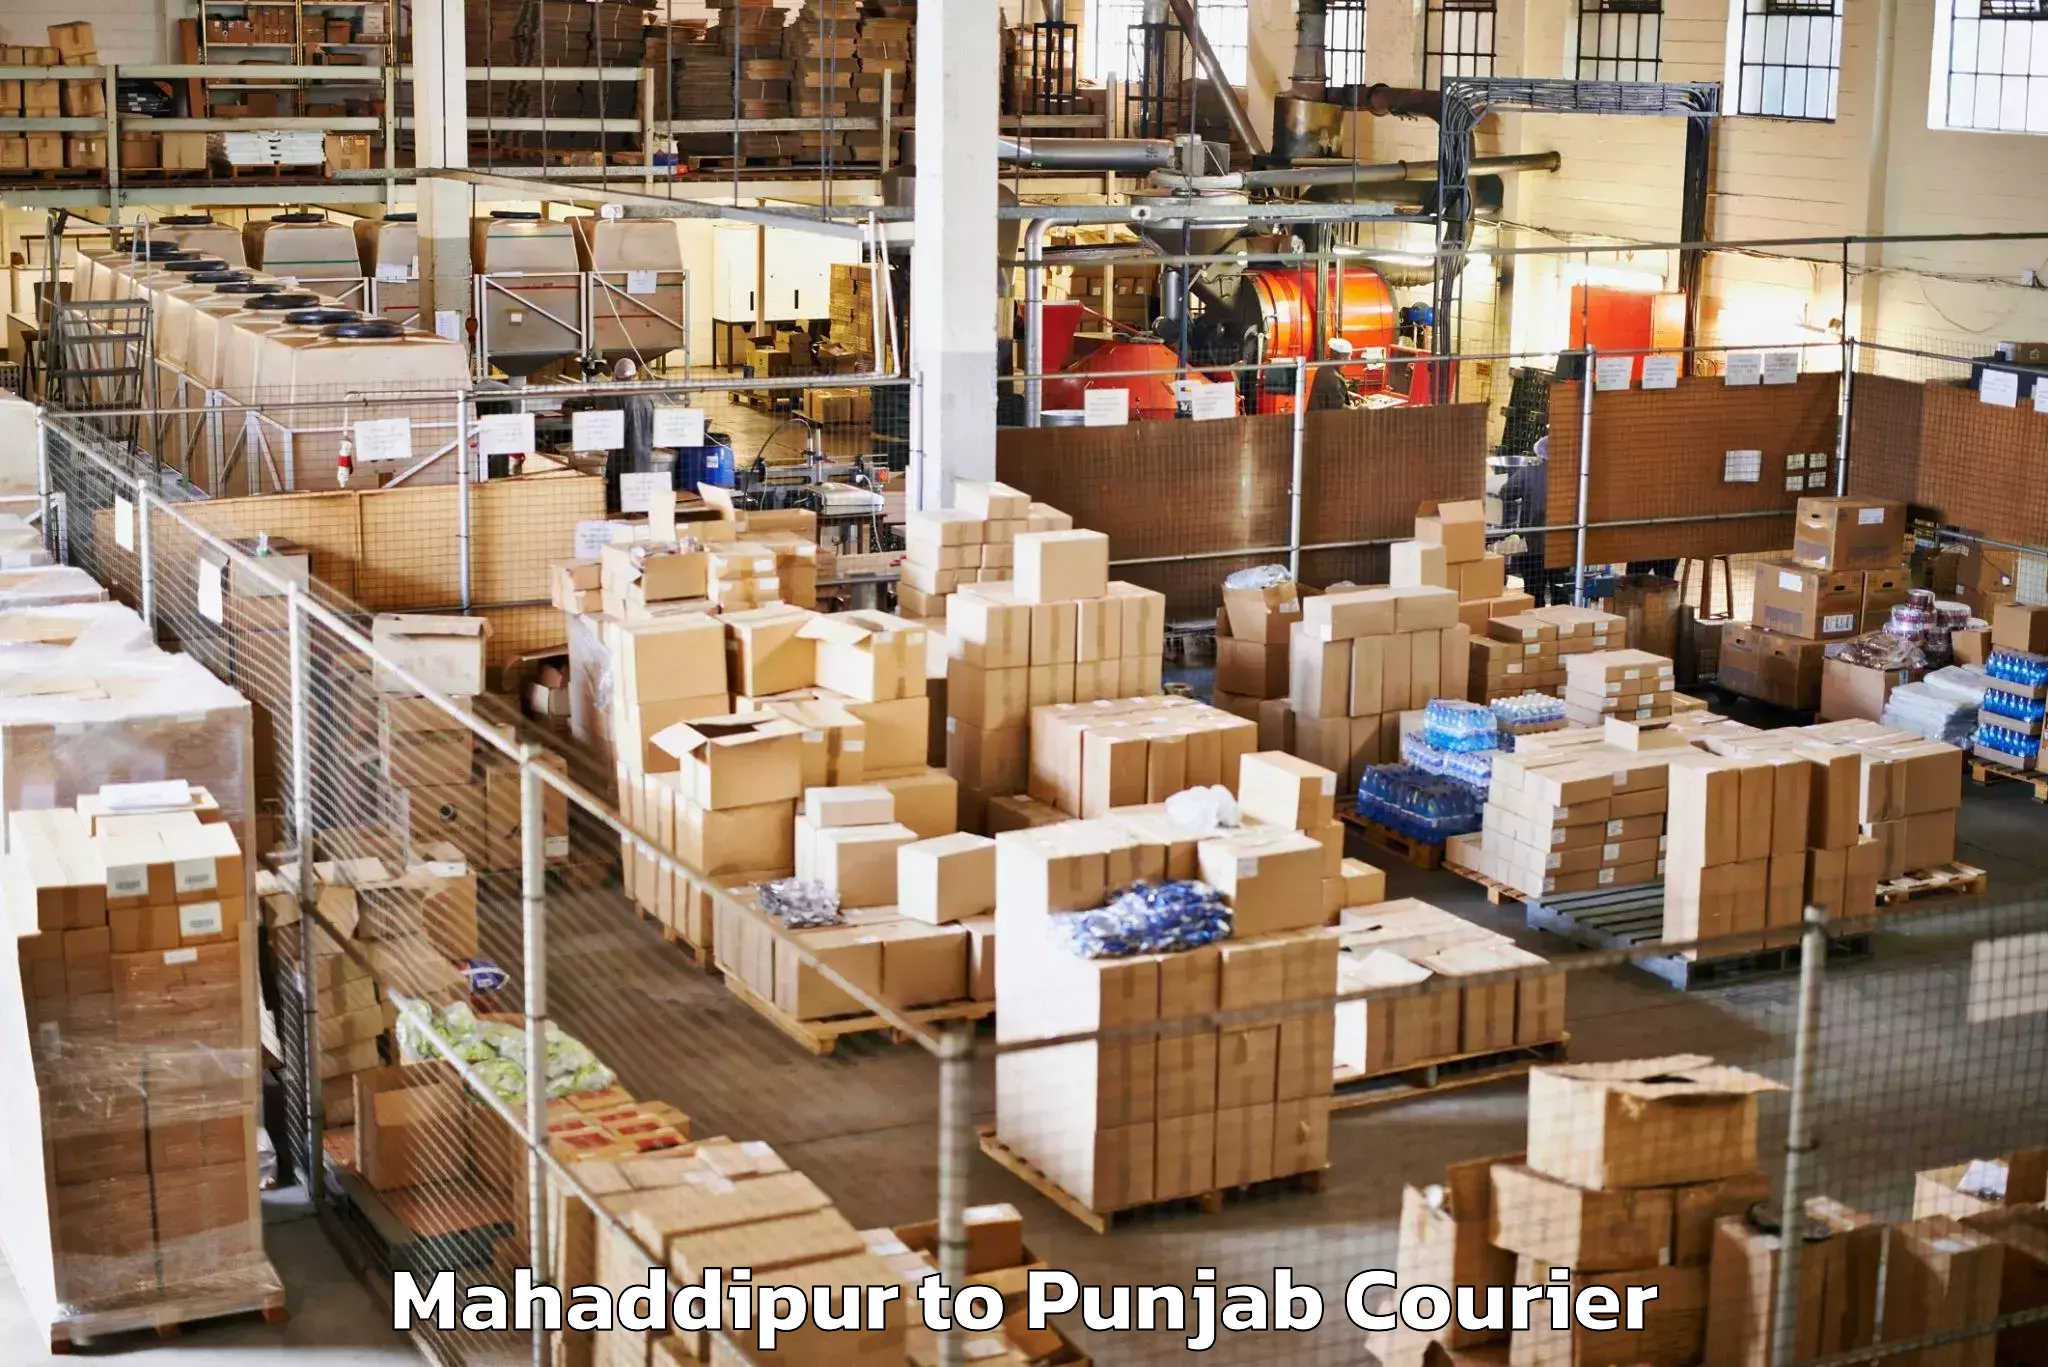 Efficient baggage transport Mahaddipur to Punjab